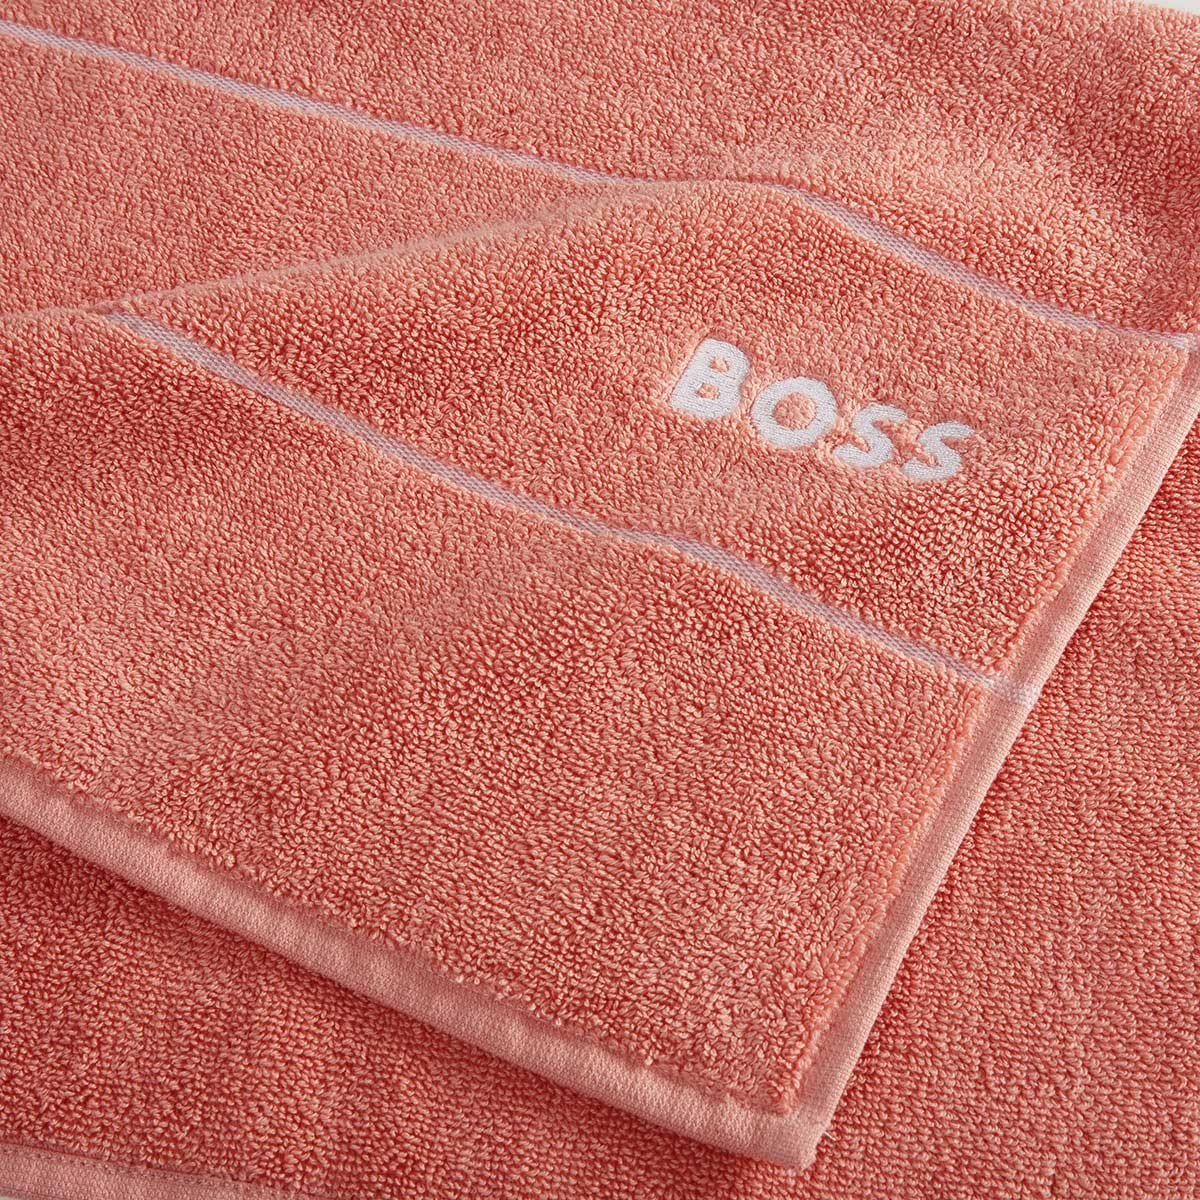 Fig Linens - Plain Sorbet Bath Towels by Hugo Boss - Closeup